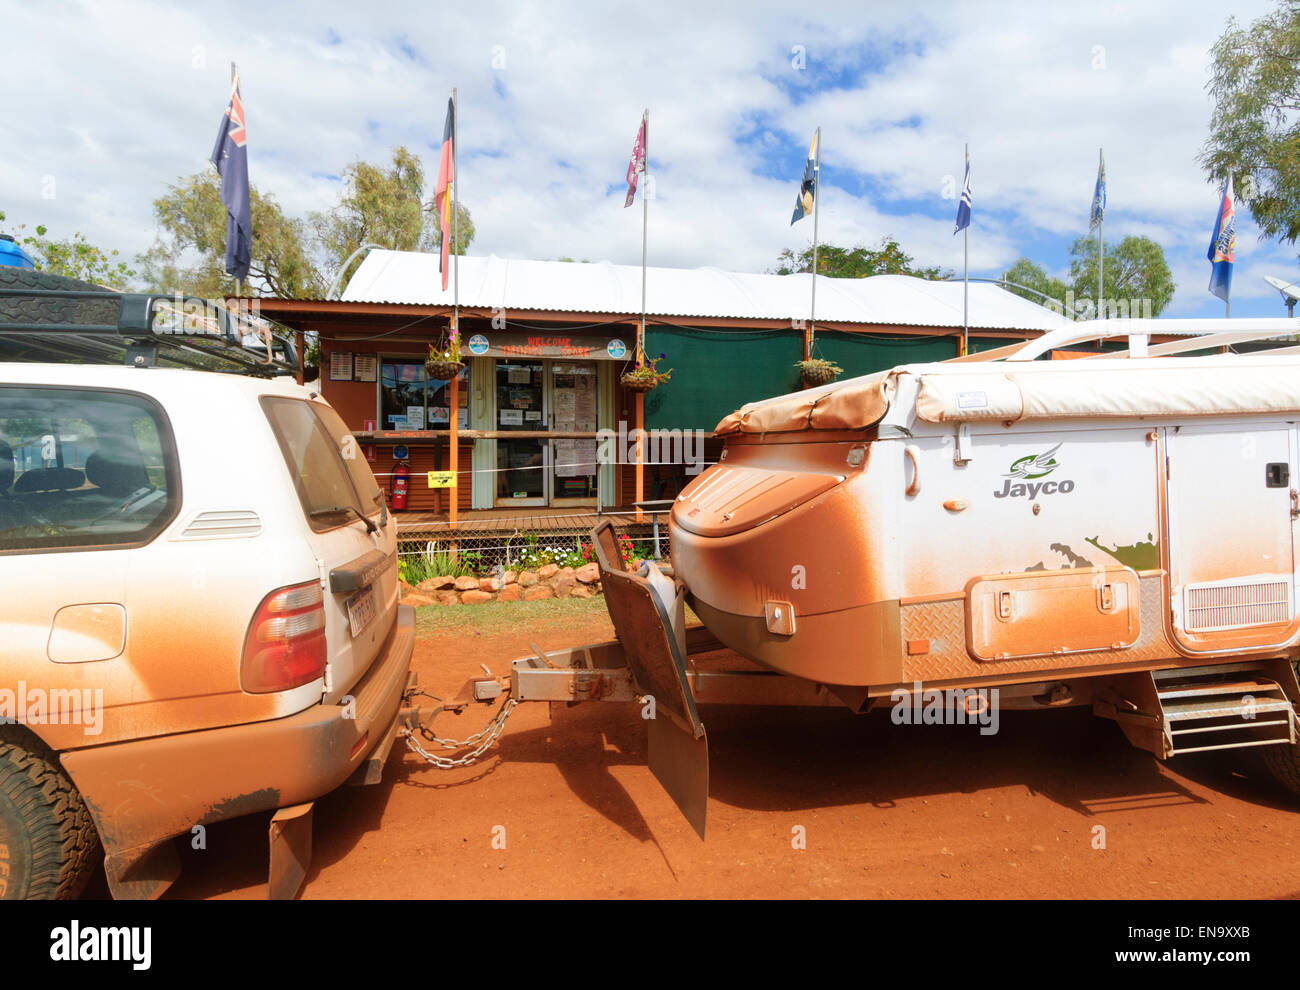 Outback fahren, Auto Fahren mit einem Anhänger in den roten Staub bedeckt, Kimberley Region, Western Australia, WA, Australien Stockfoto